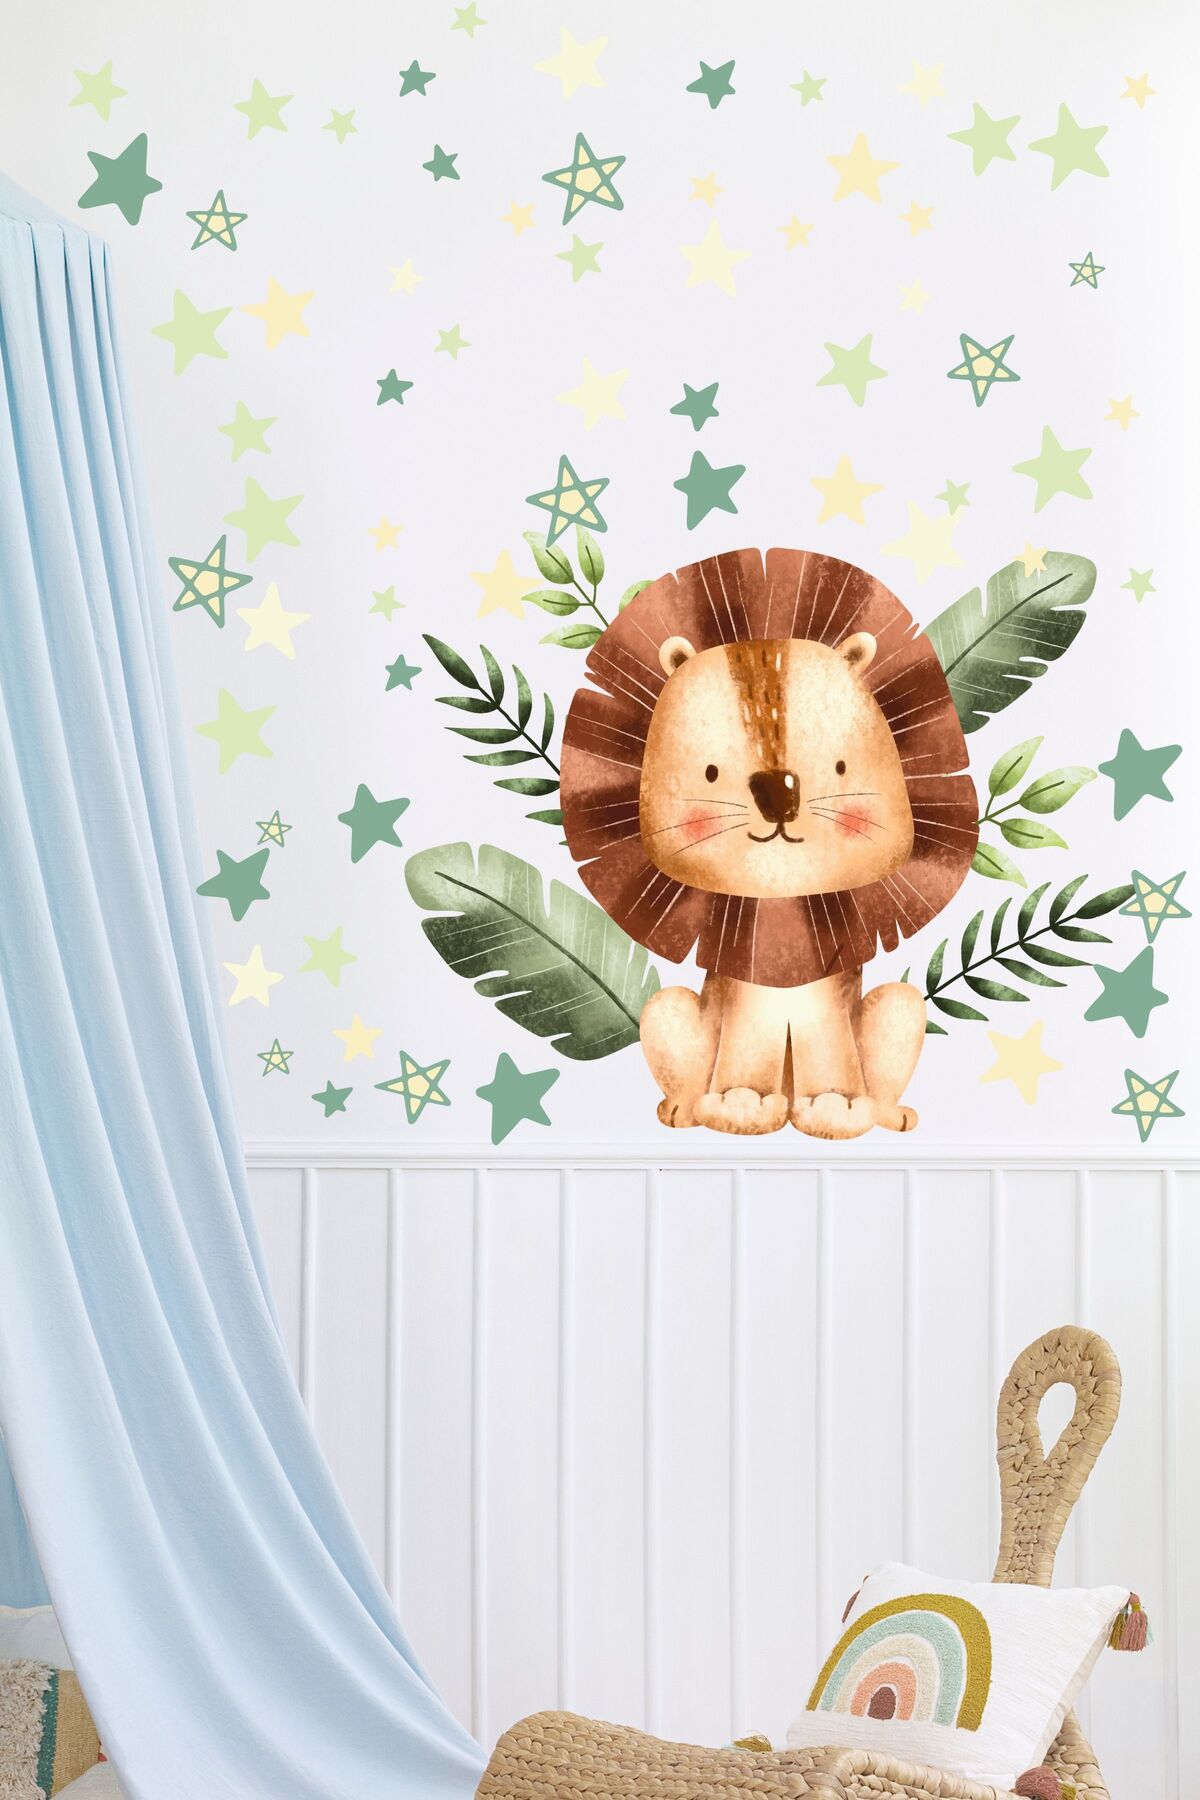 Çocuk Bebek Odası Sticker Seti, Yeşil Aslan ve Doğa Temalı, Çocuk ve Bebek Odası Duvar Stickerı